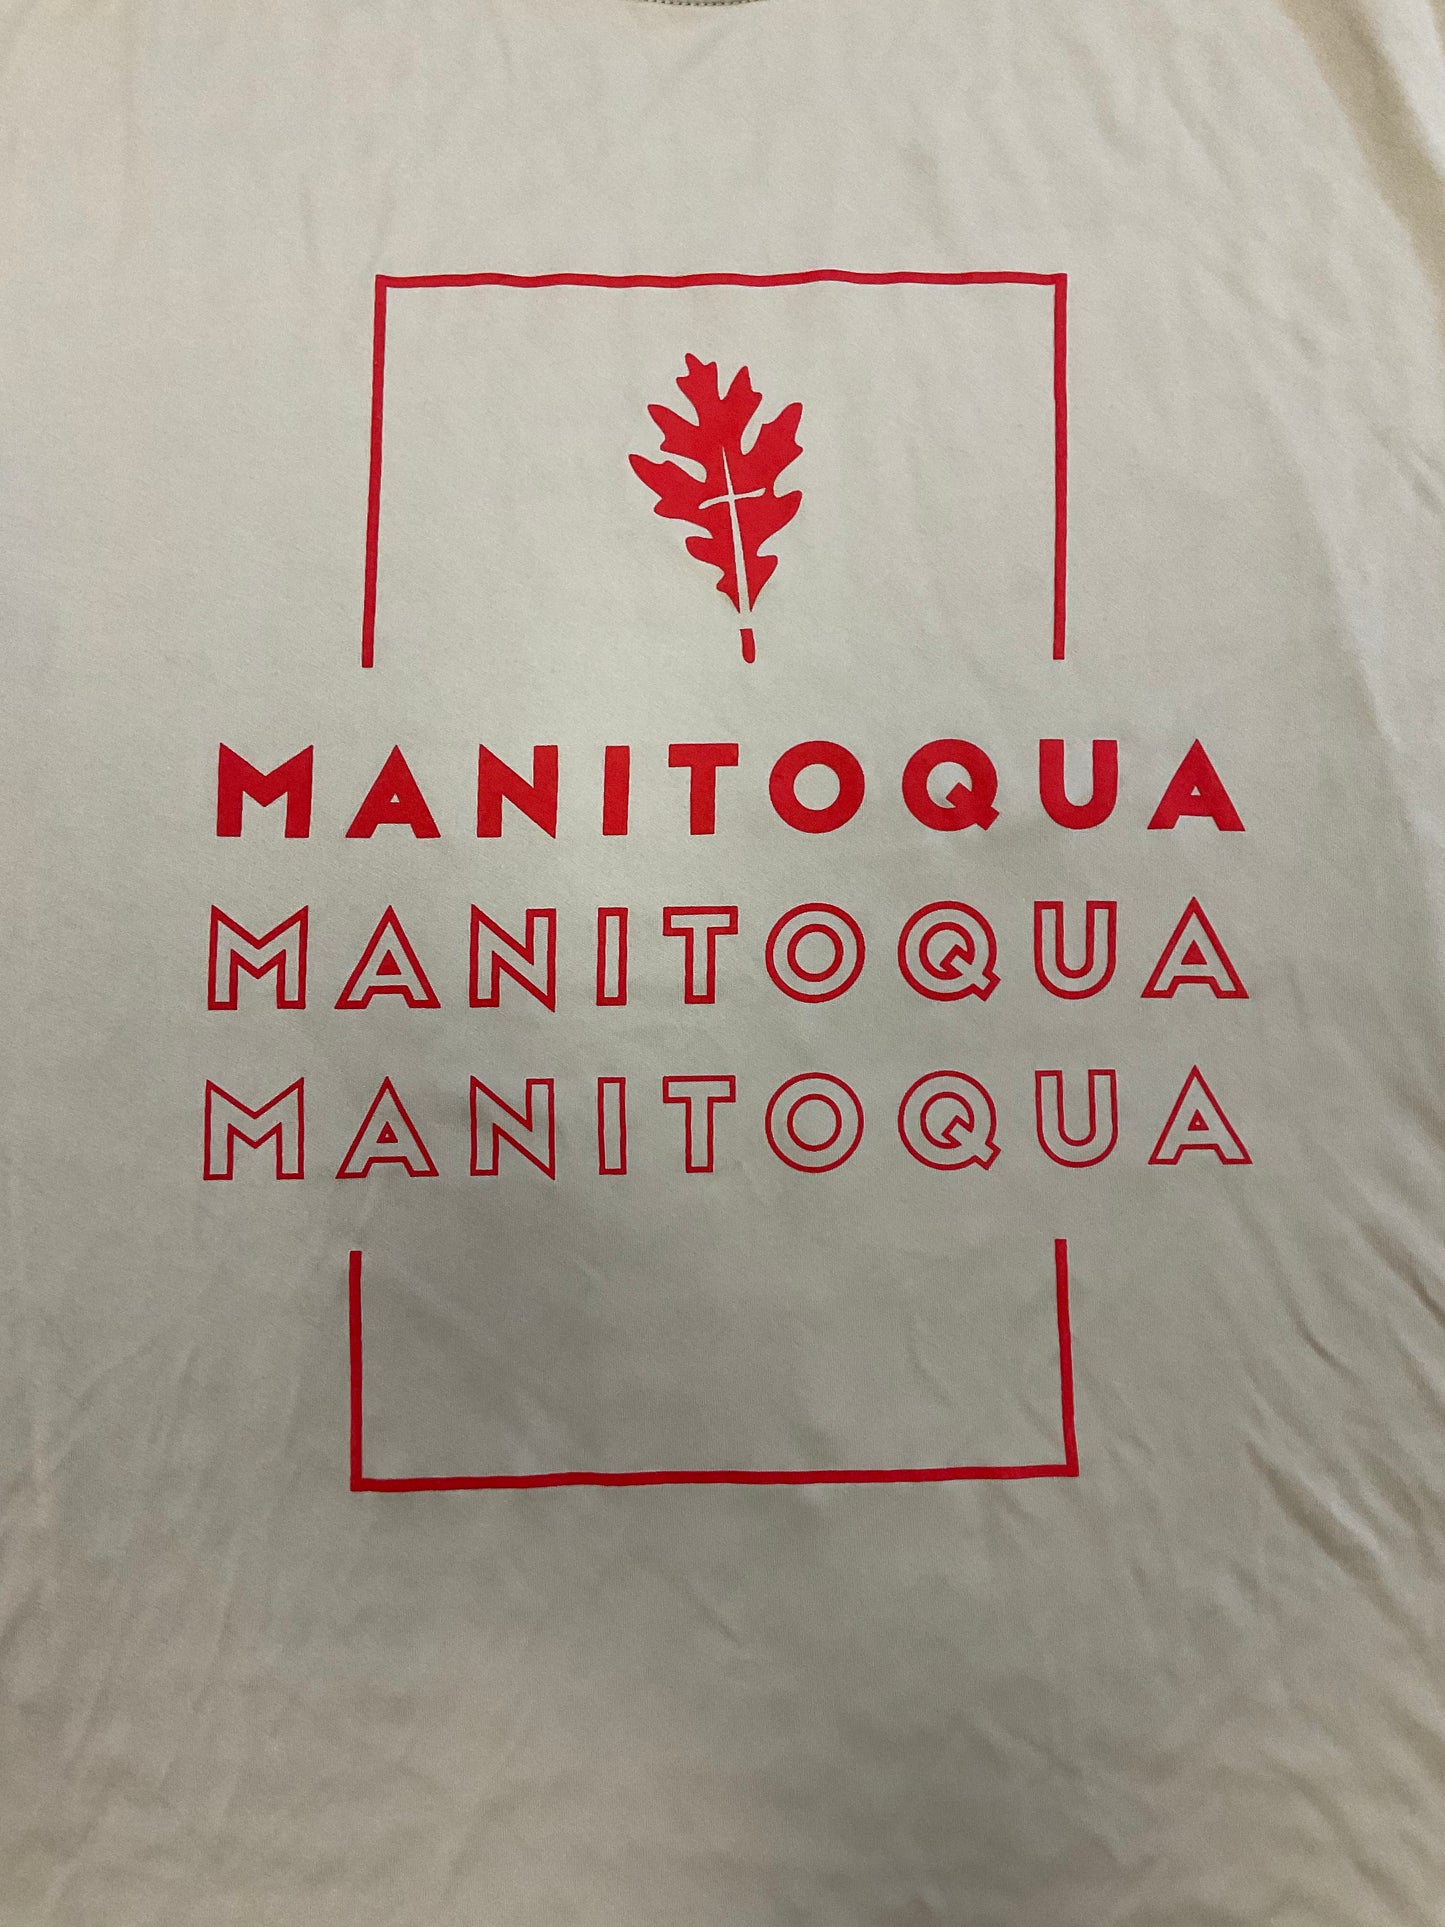 Manitoqua x3 sports t-shirt